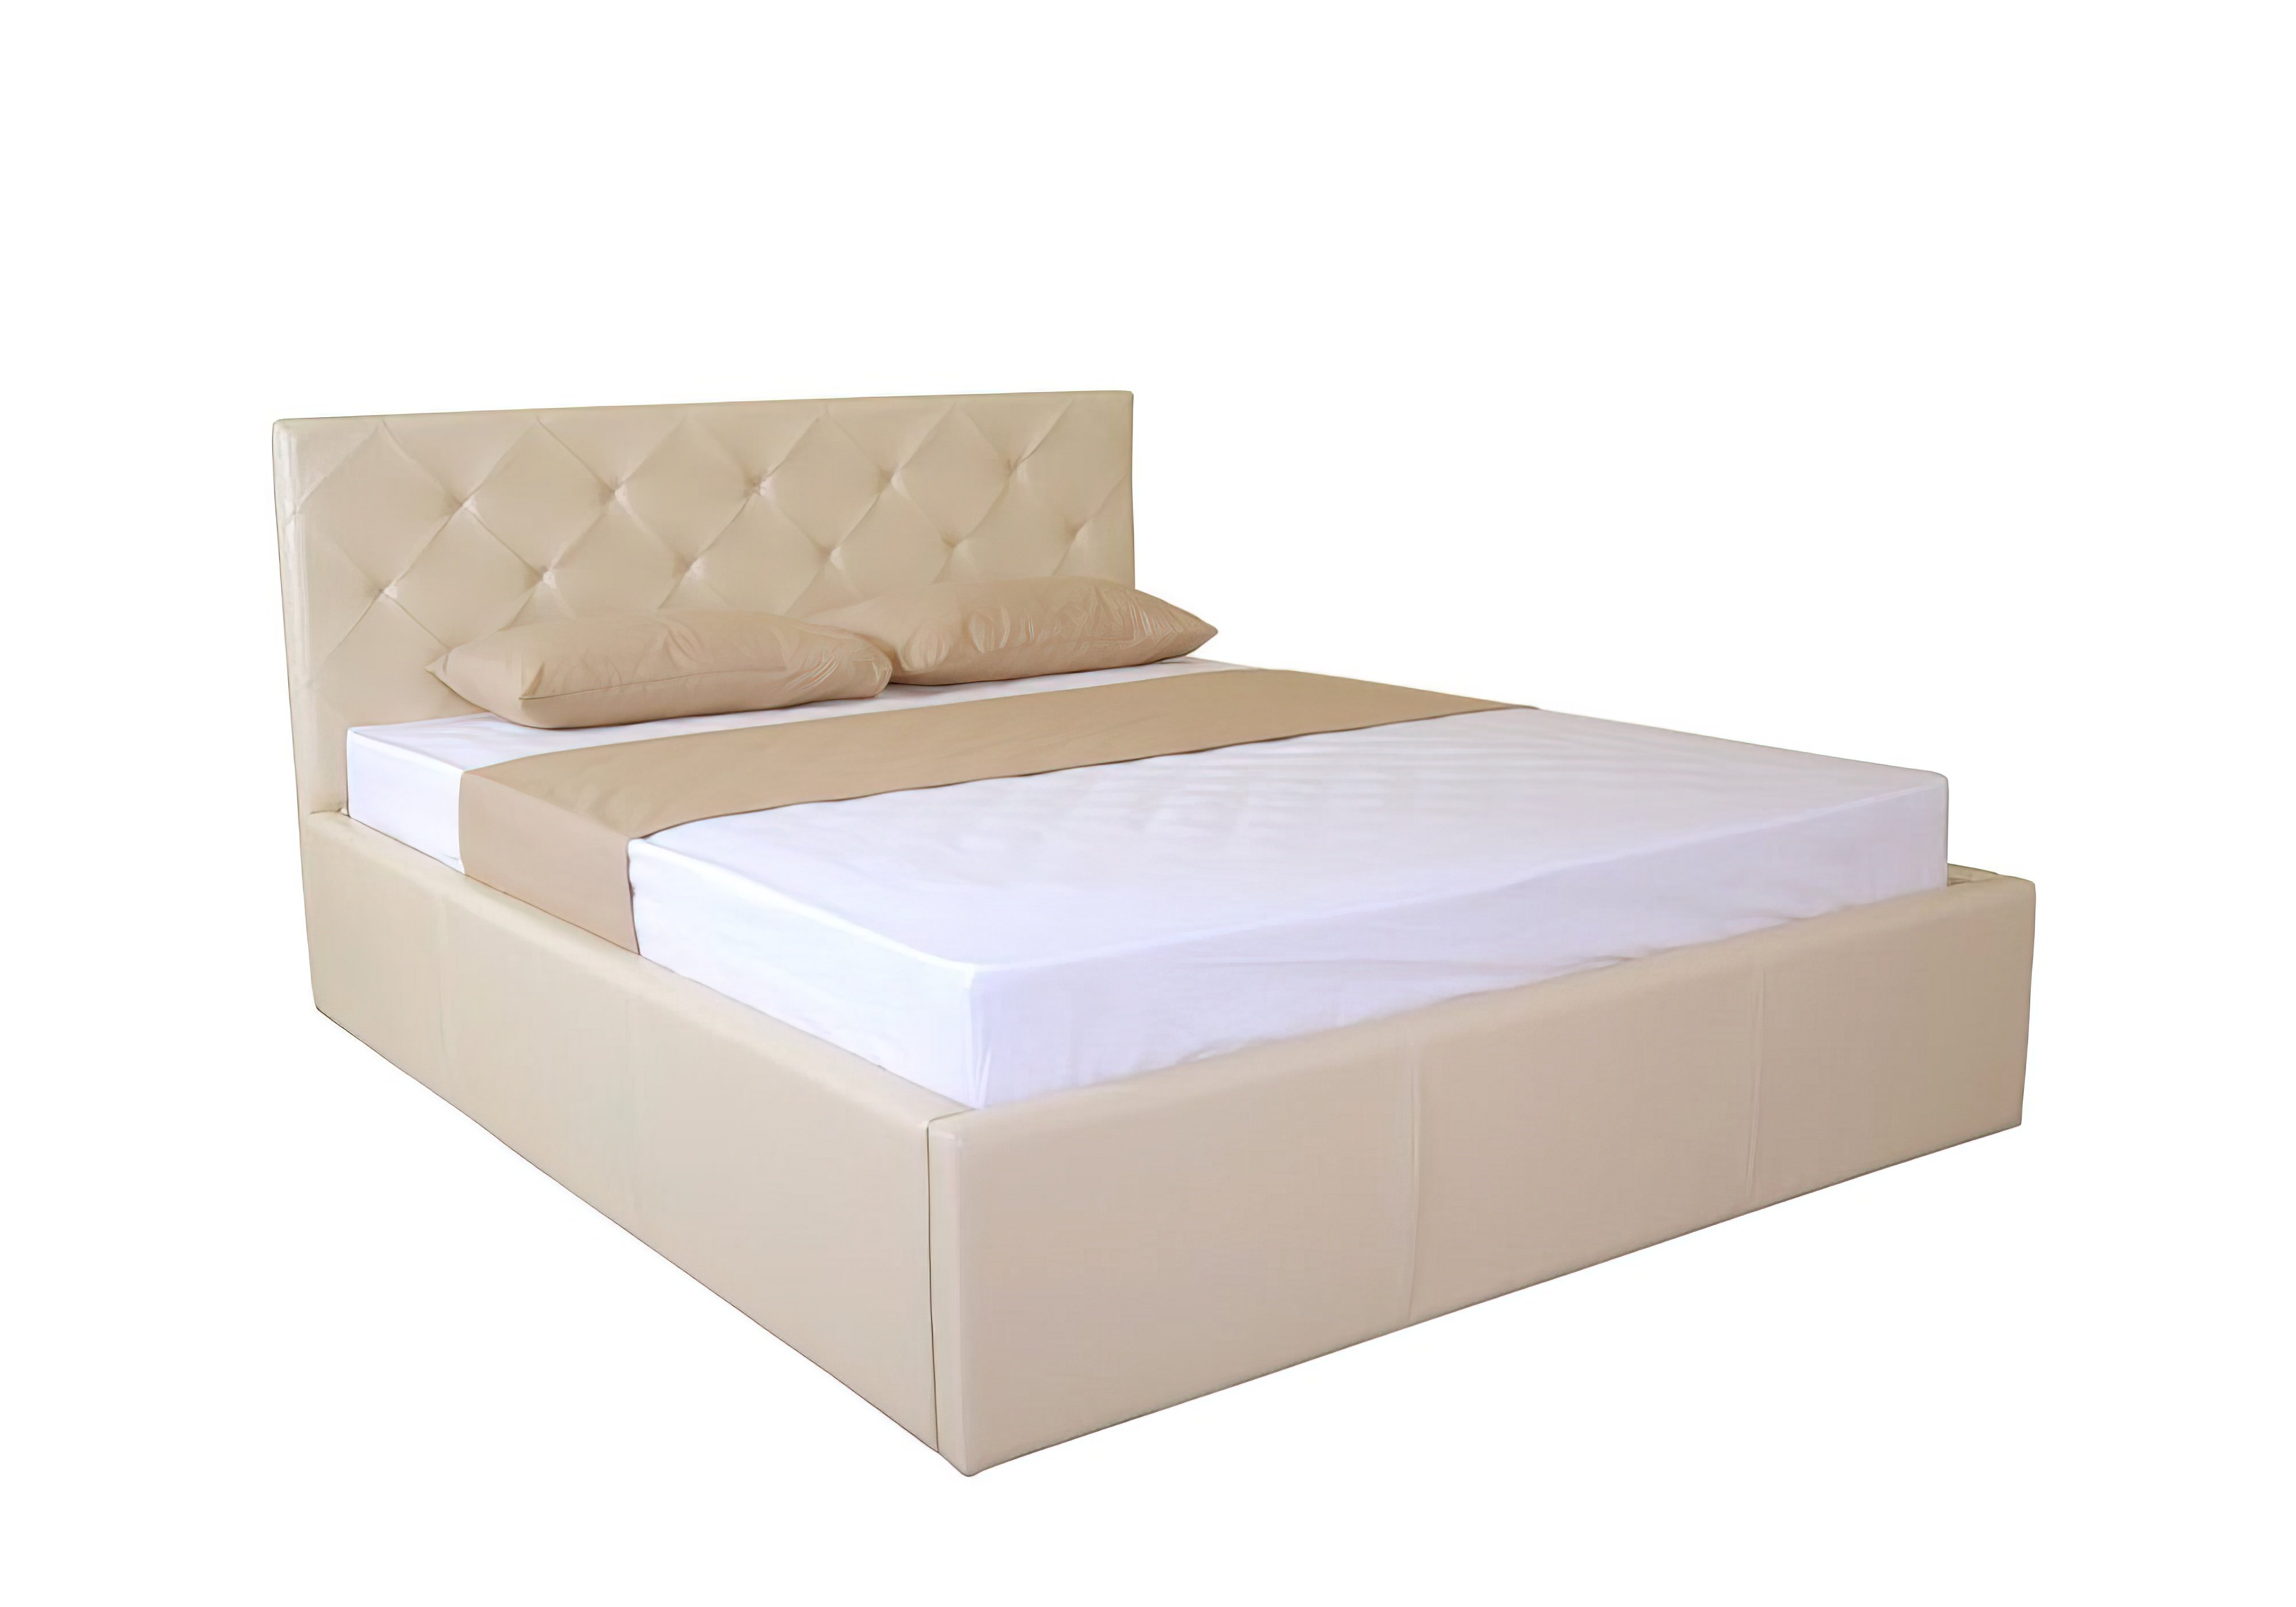  Купить Кровати с подъемным механизмом Кровать двуспальная "BRIZ lift" EAGLE